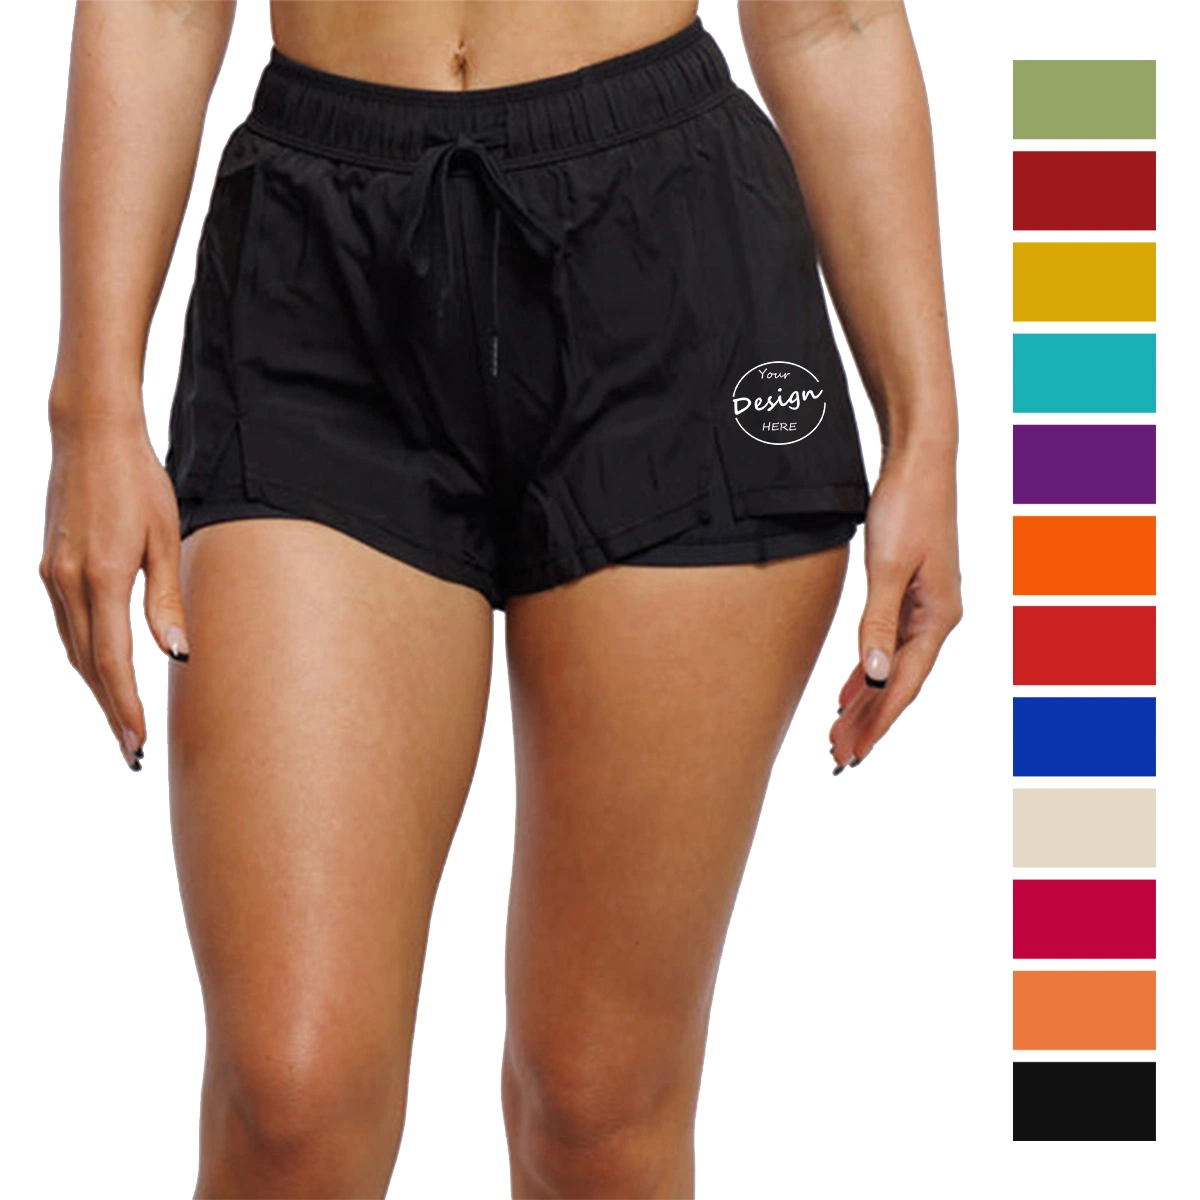 Mujer Alphalete Seamless Gym Fitness Yoga Deportes Biker Shorts Shorts de botín la ejecución de las mujeres Mujer pantalones cortos pantalones cortos